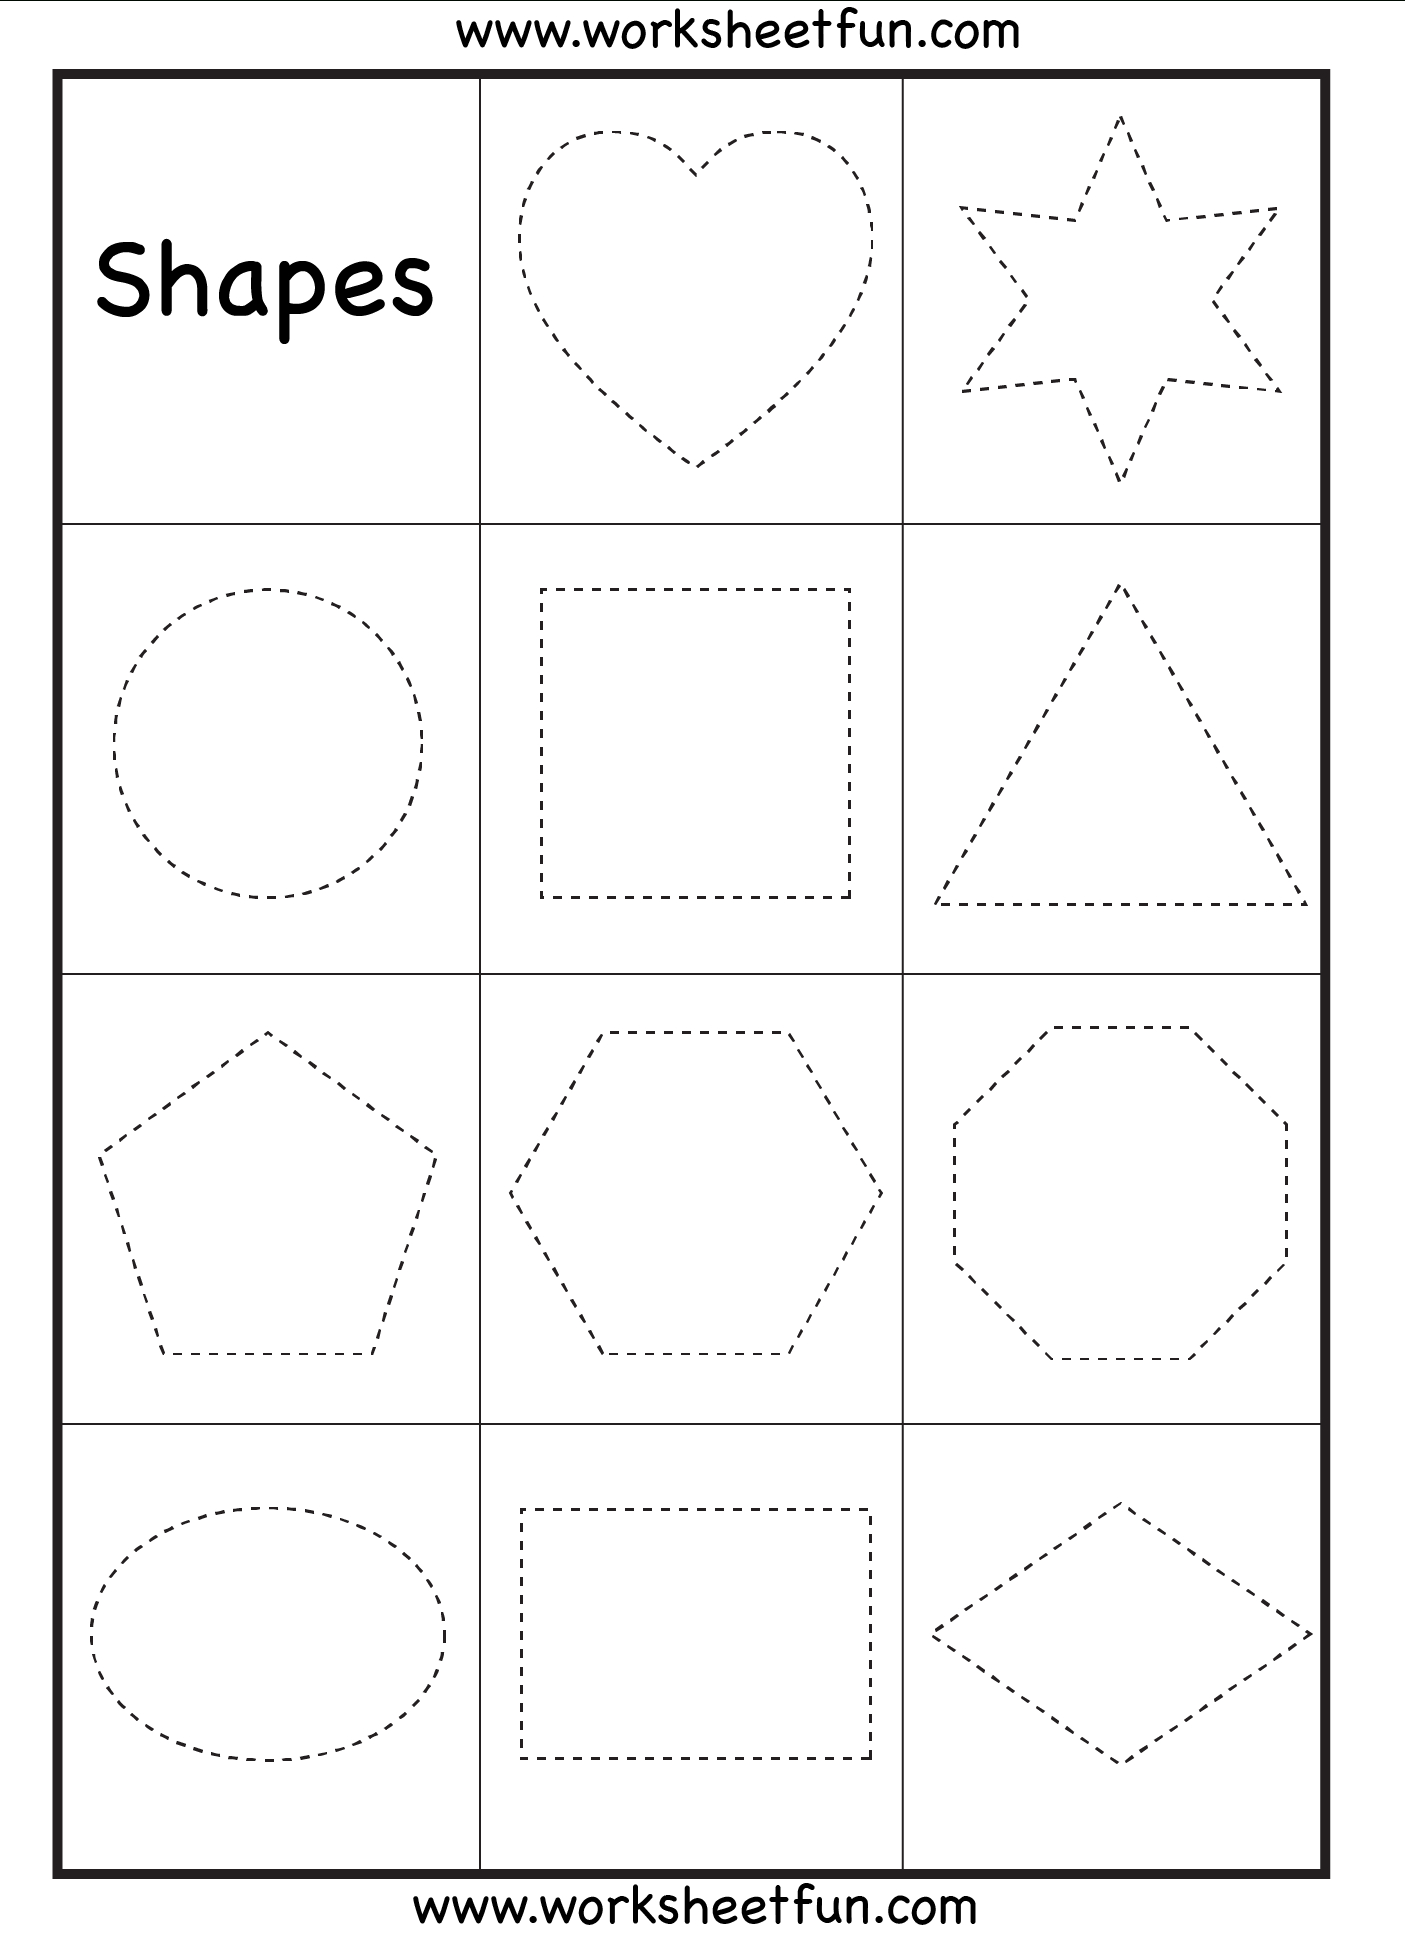 Preschool Worksheets / Free Printable Worksheets – Worksheetfun - Free Printable Shapes Worksheets For Kindergarten